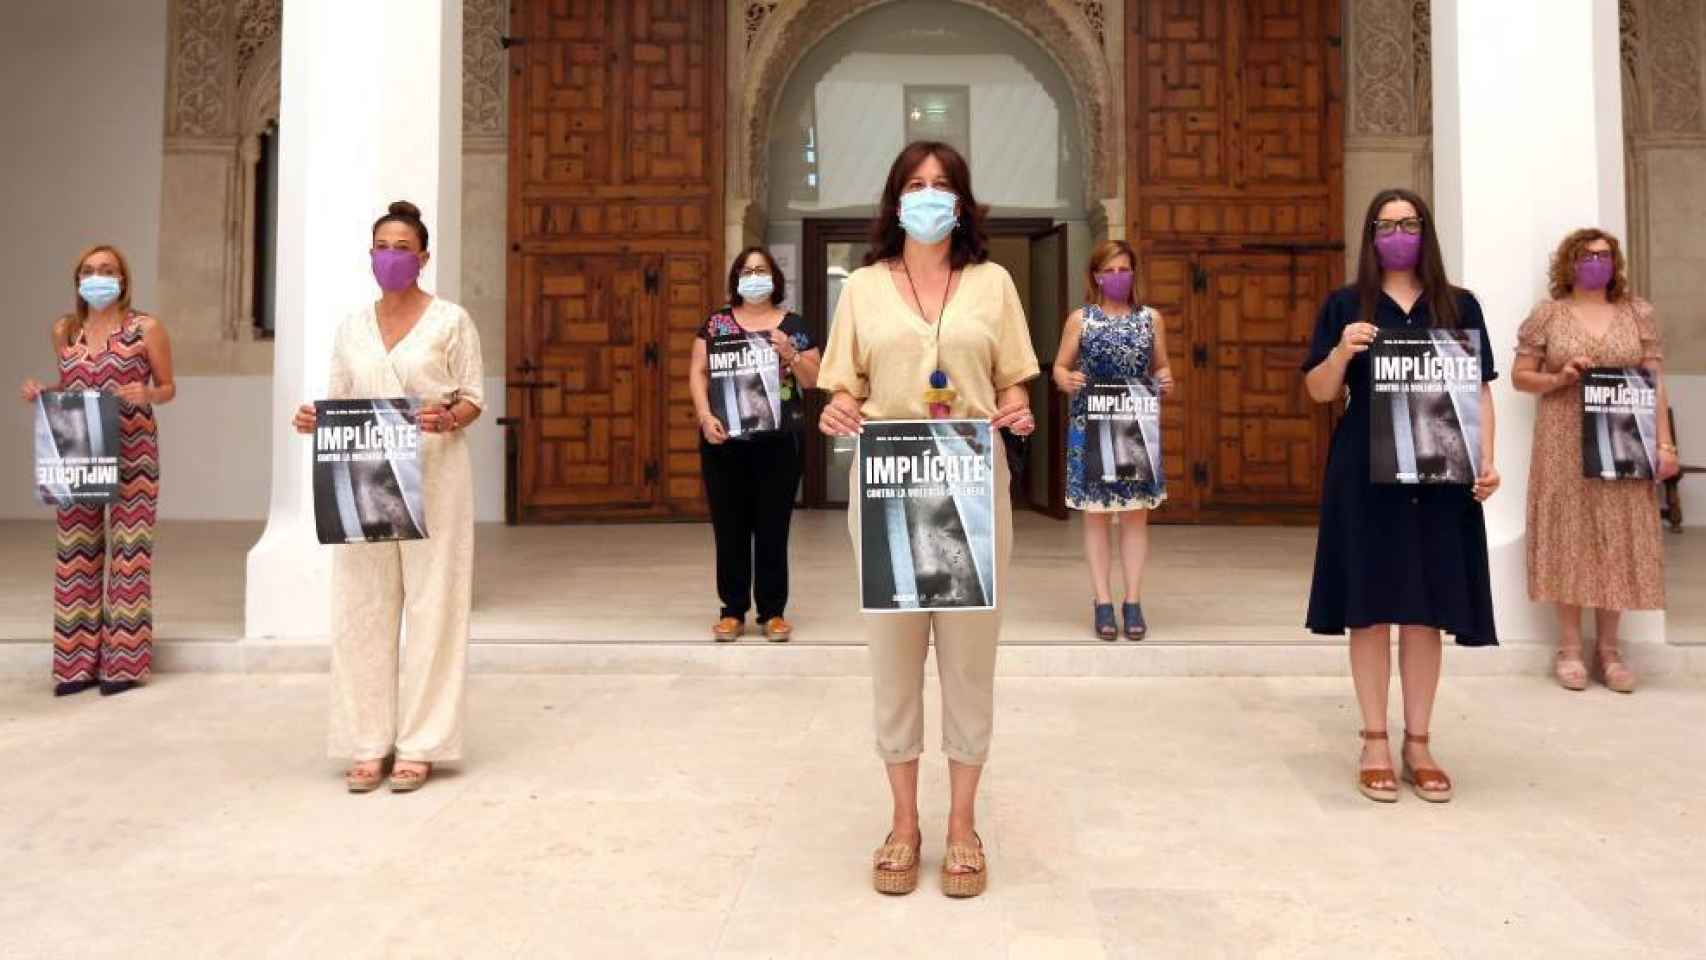 La consejera de Igualdad, Blanca Fernández, ha presentado la nueva campaña contra la violencia de género en el Palacio de Fuensalida